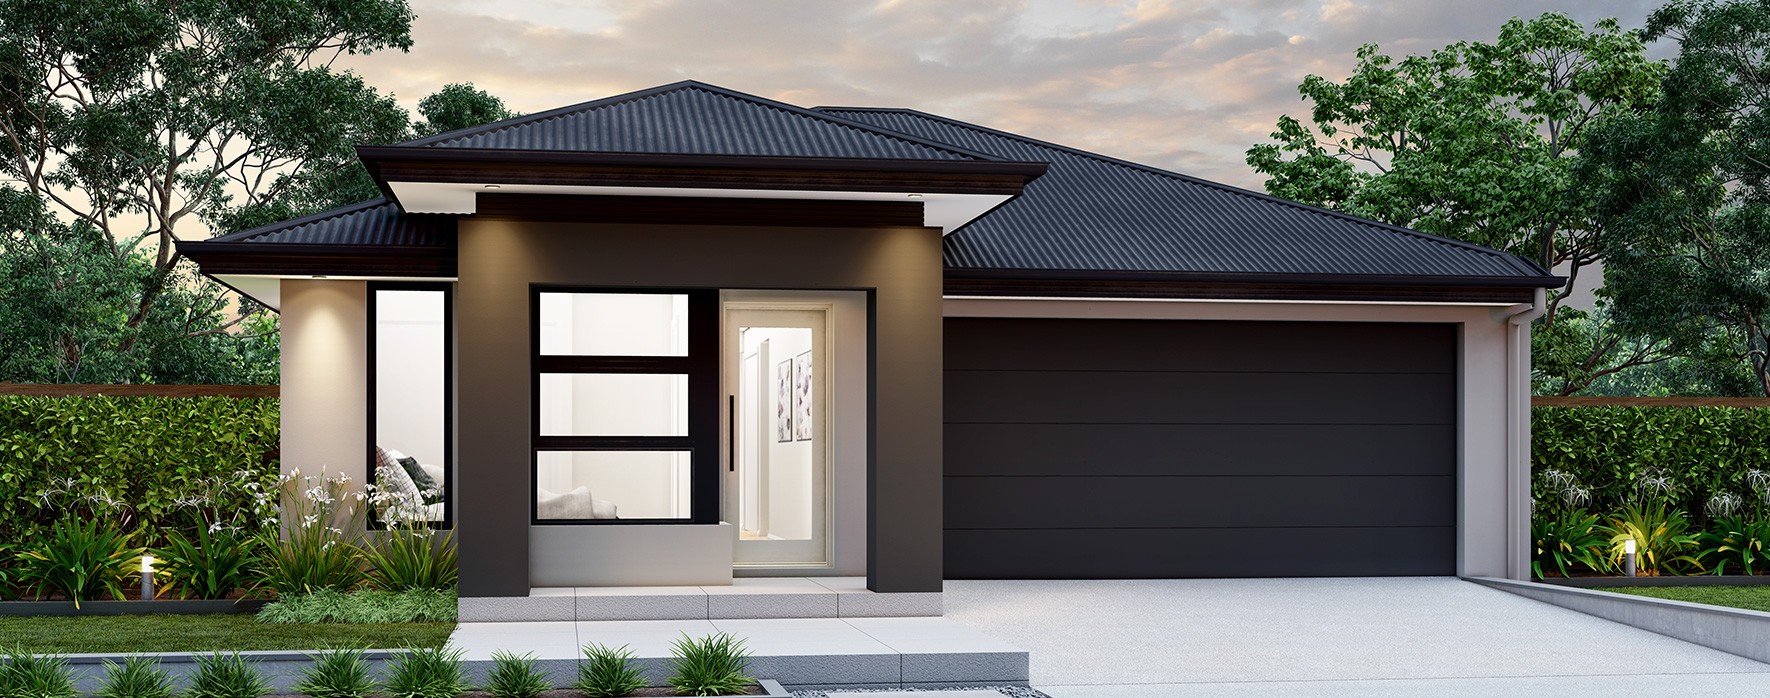 DG-viva-single-storey-house-design-standard